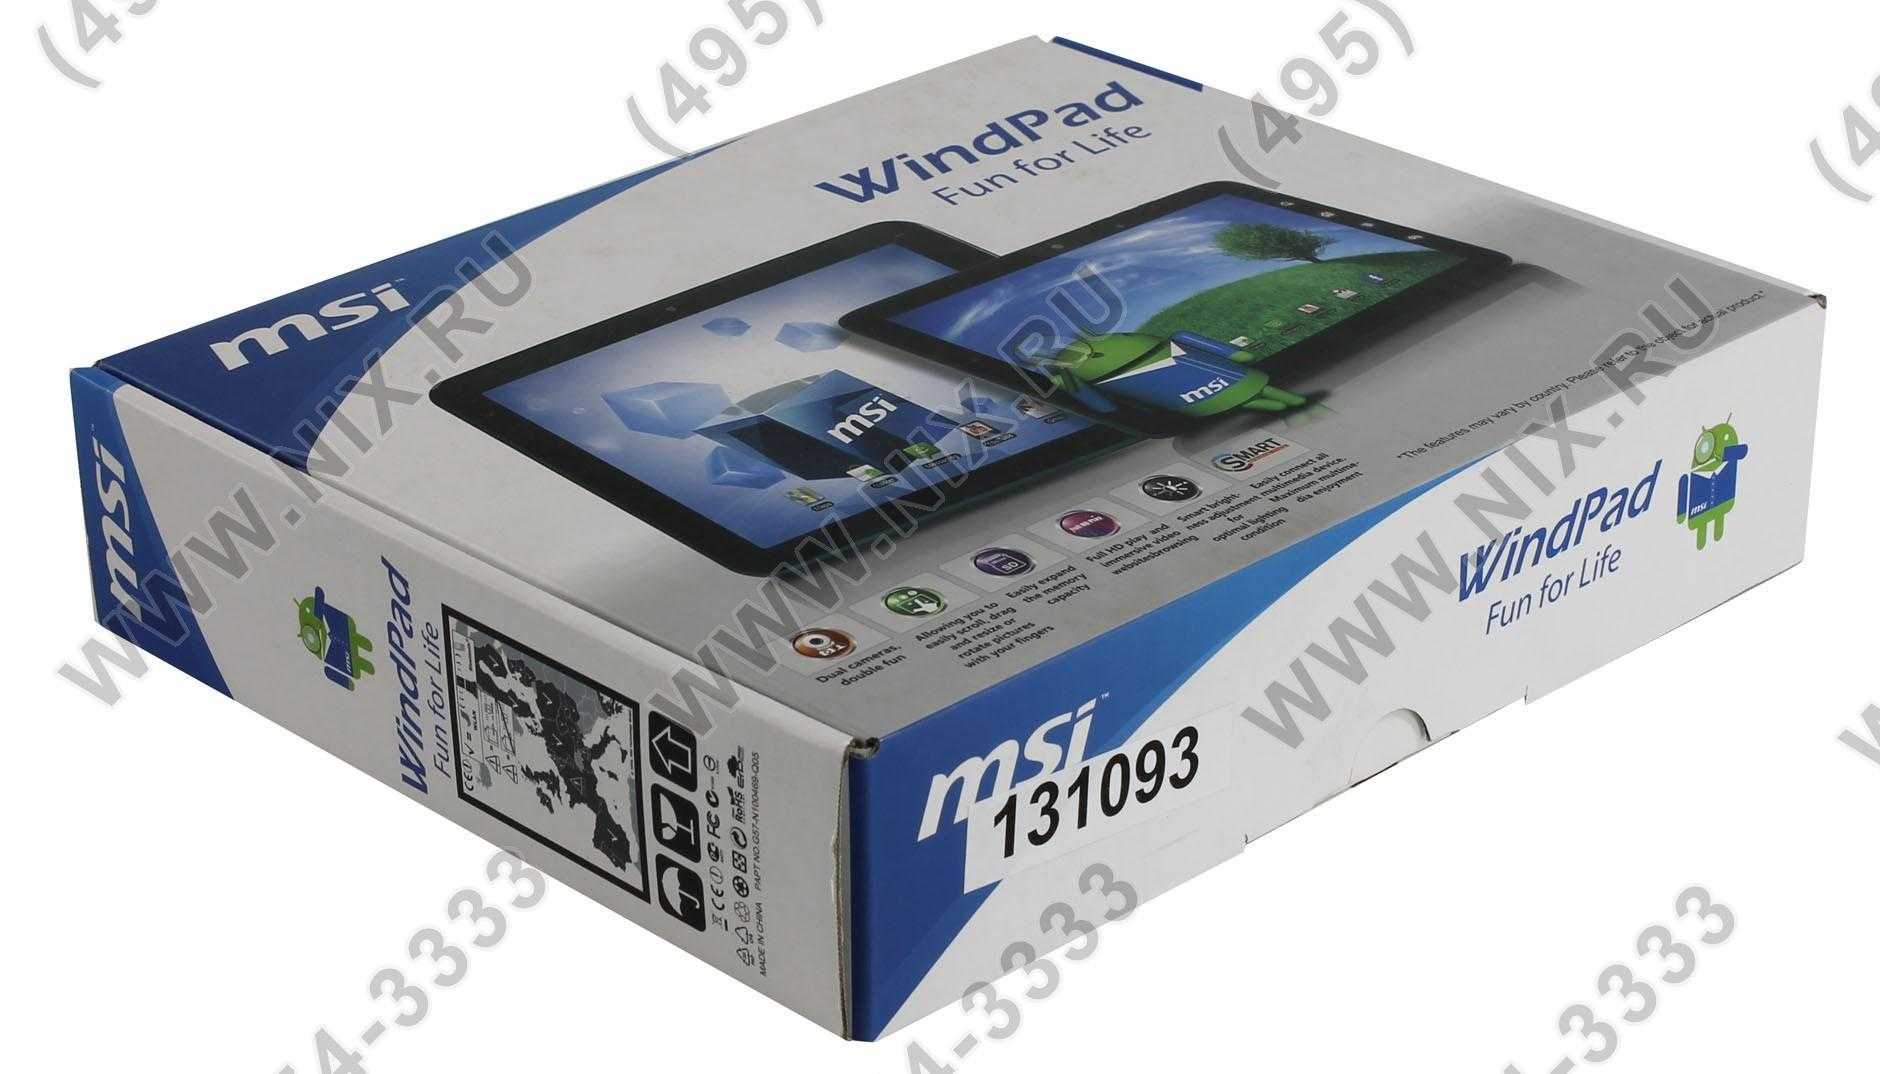 Прошивка планшета msi windpad enjoy 10 — купить, цена и характеристики, отзывы